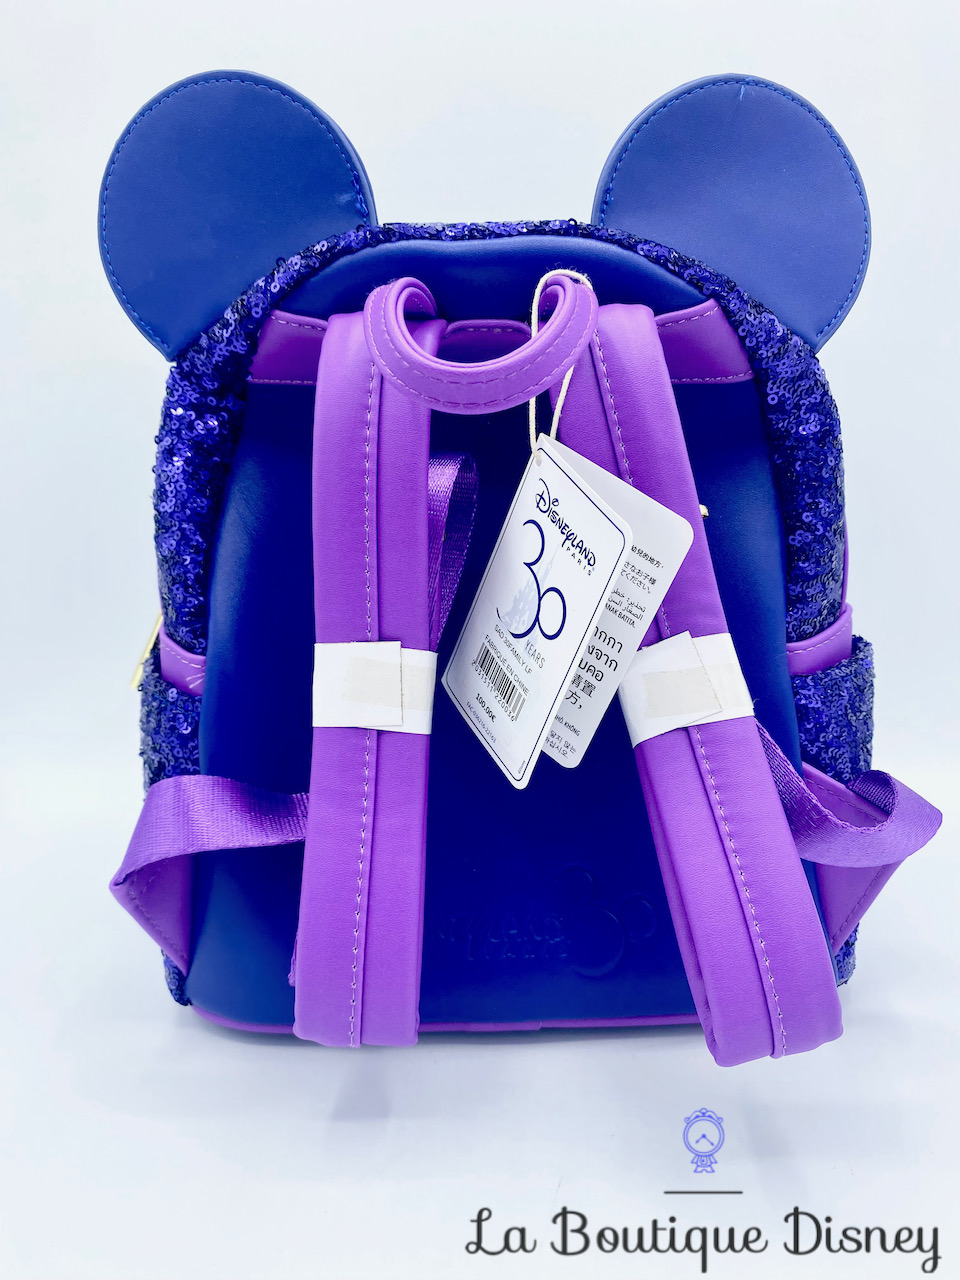 Peut-on acheter des sacs Loungefly à Disneyland Paris ?